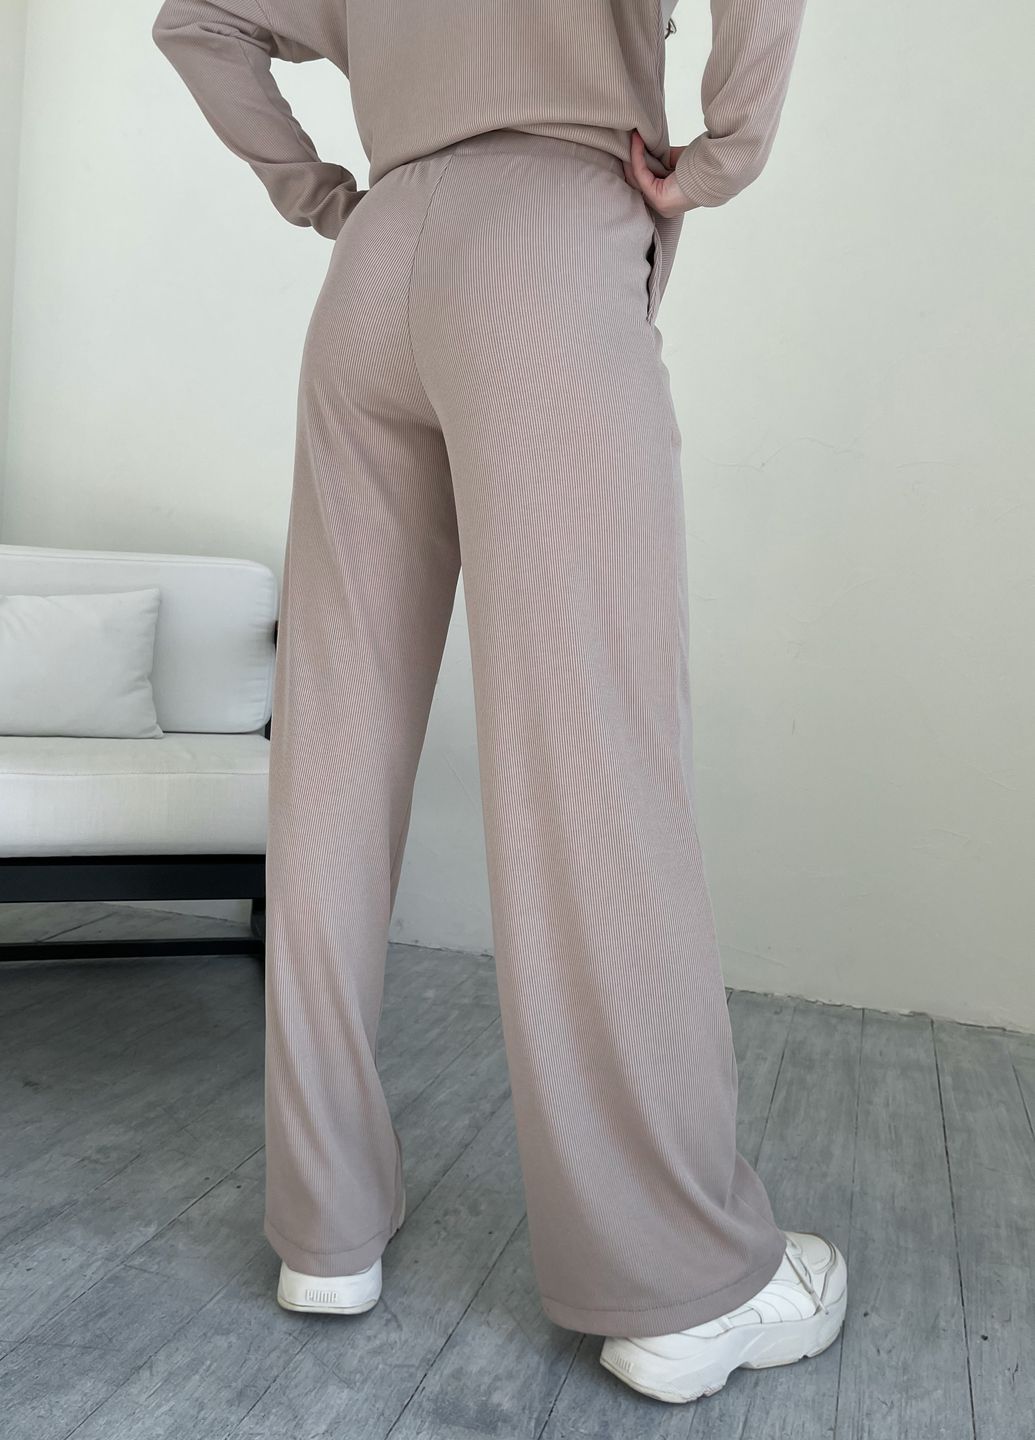 Купить Бежевый костюм женский в рубчик с широкими штанами Merlini Мантуя 100000403, размер XS-M в интернет-магазине